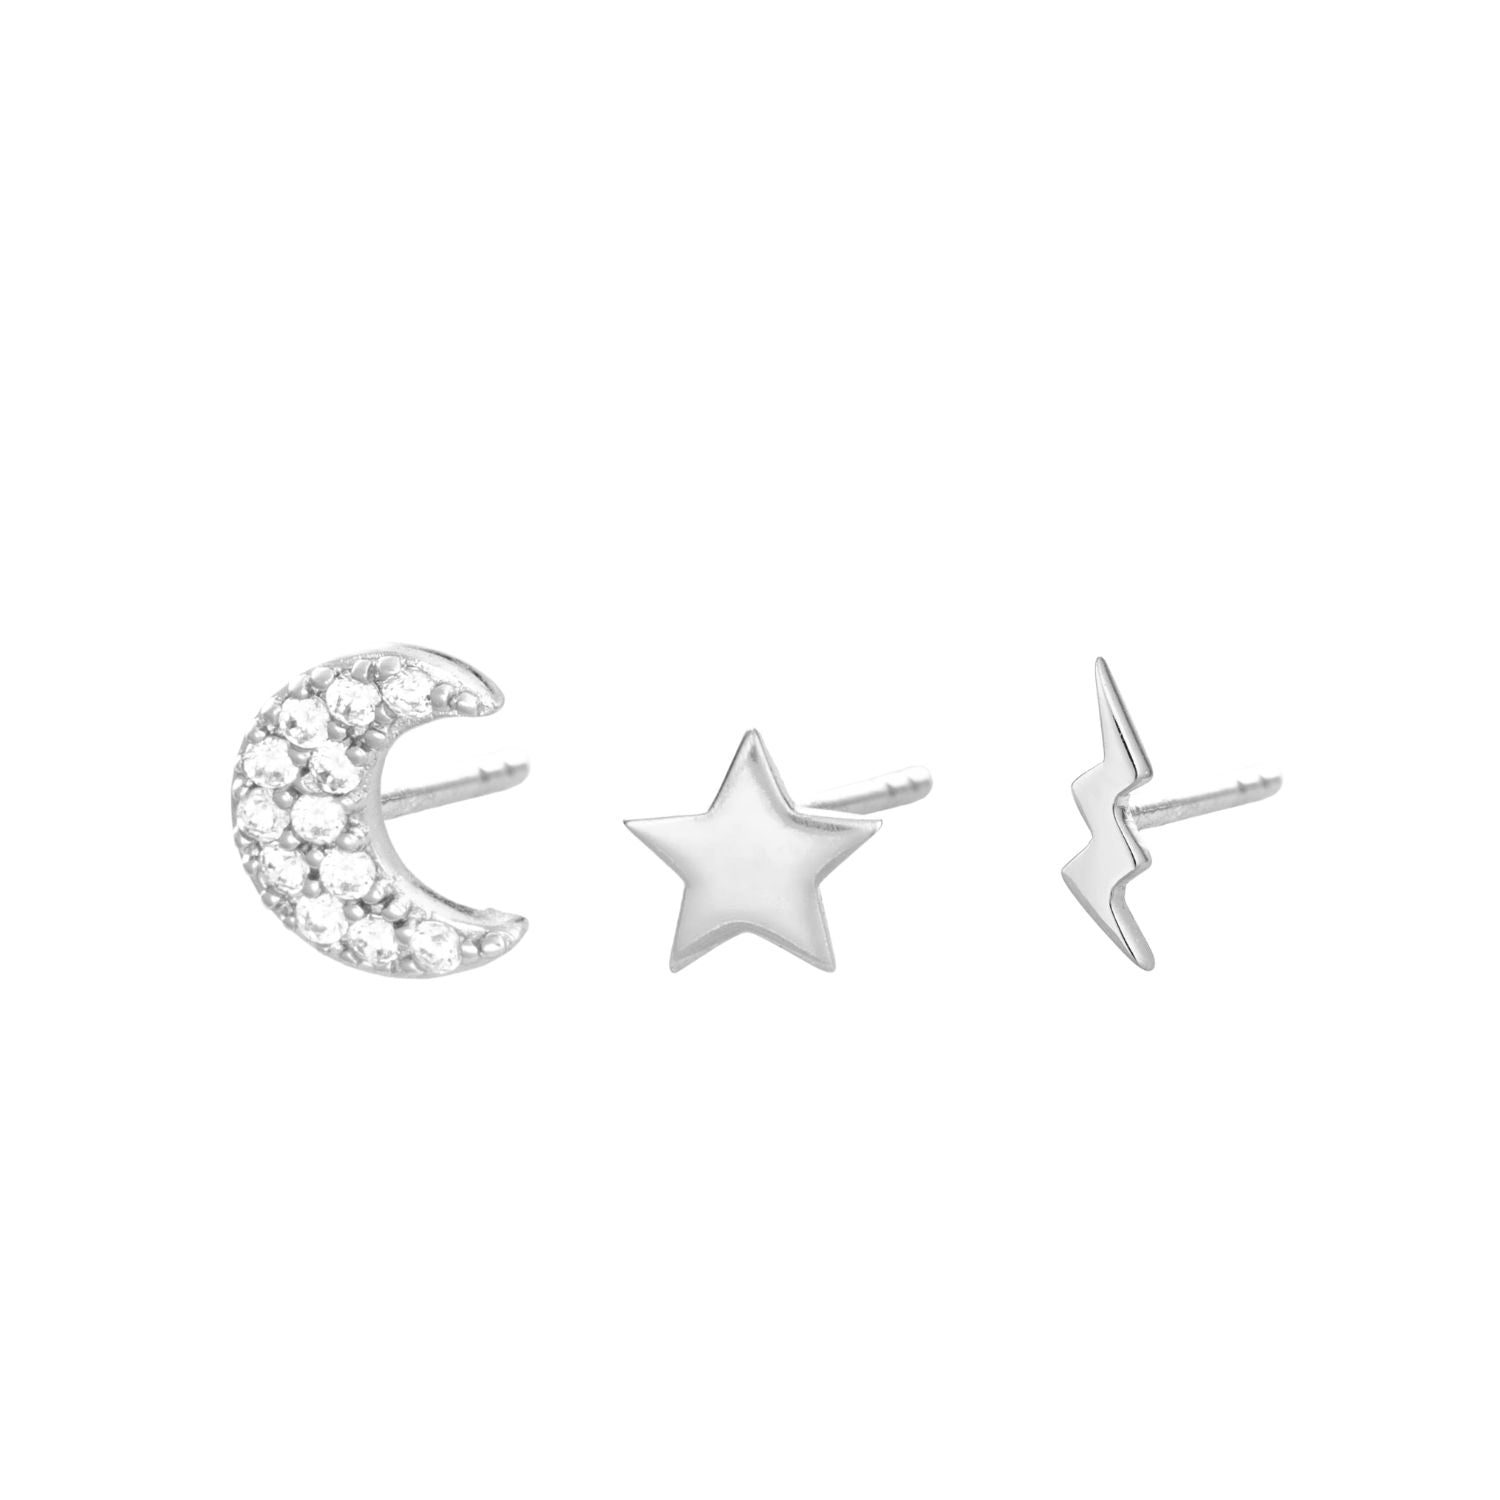 Celestial Set of 3 Single Stud Earrings  Earring Set by Scream Pretty